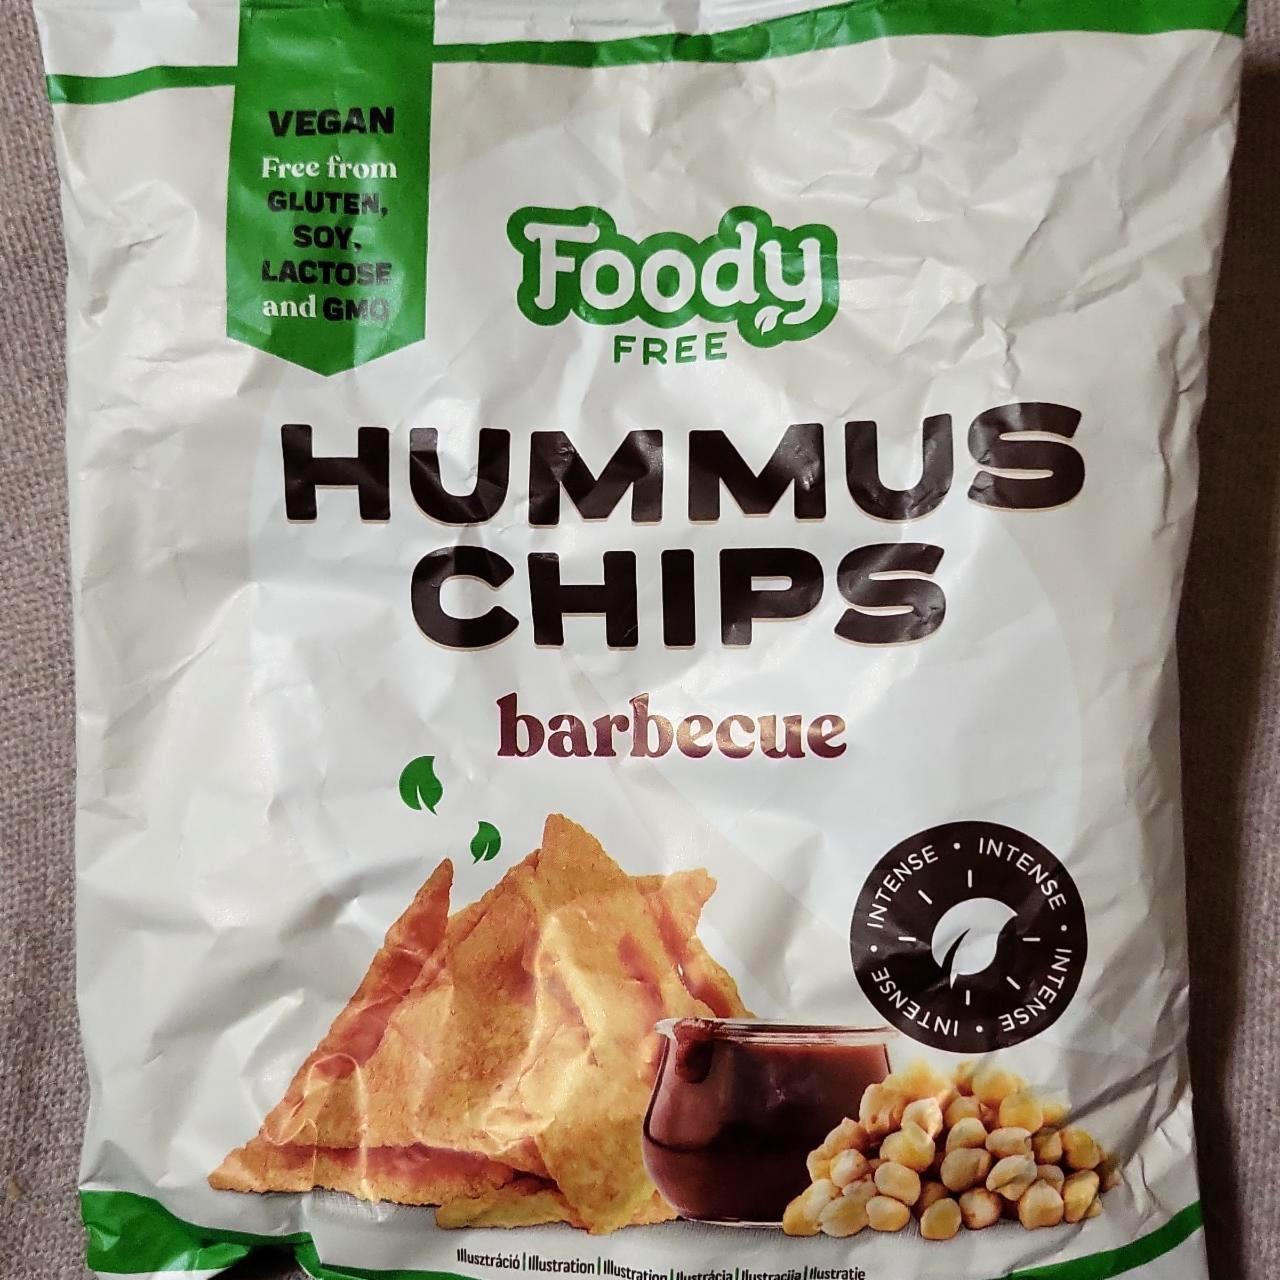 Képek - Hummus chips barbecue Foody Free